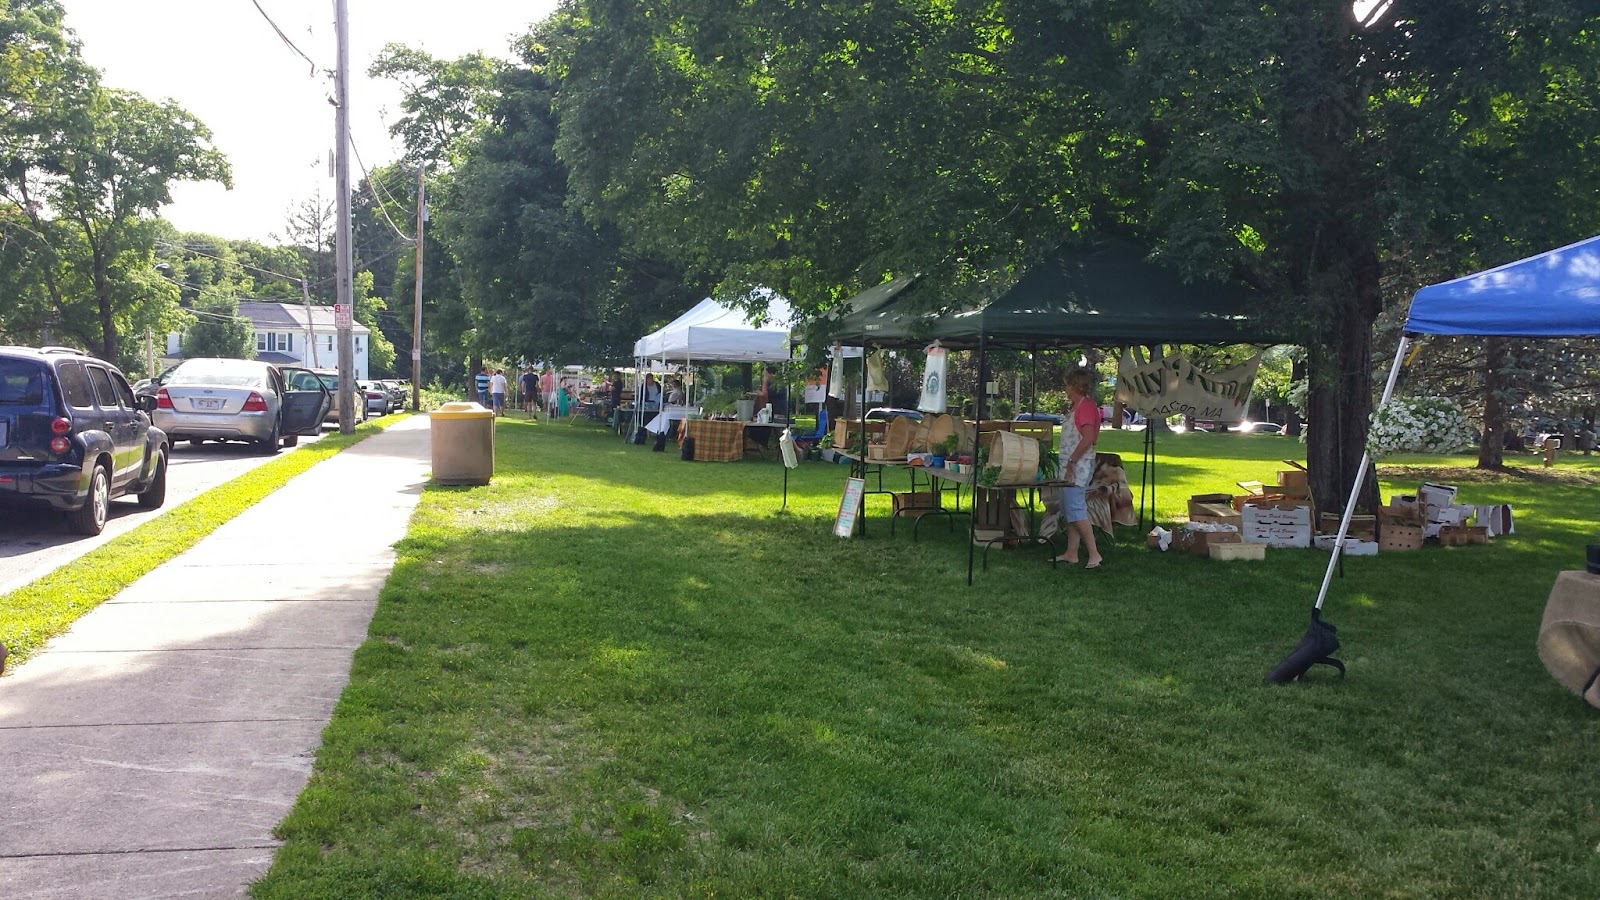 Farmers Market scene from July 2014